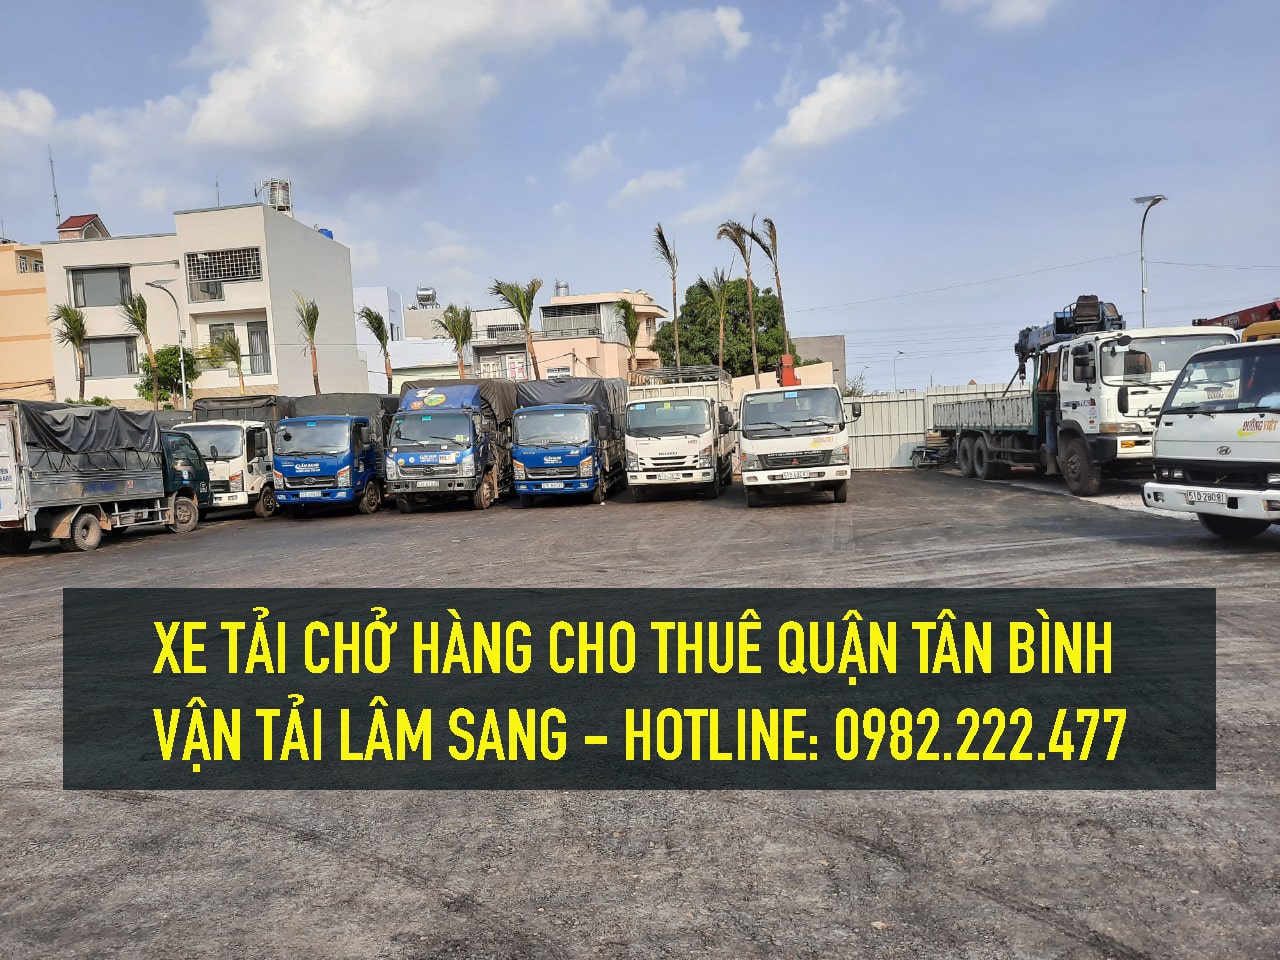 Xe tải chở hàng tại Quận Tân Bình – vận chuyển hàng hoá